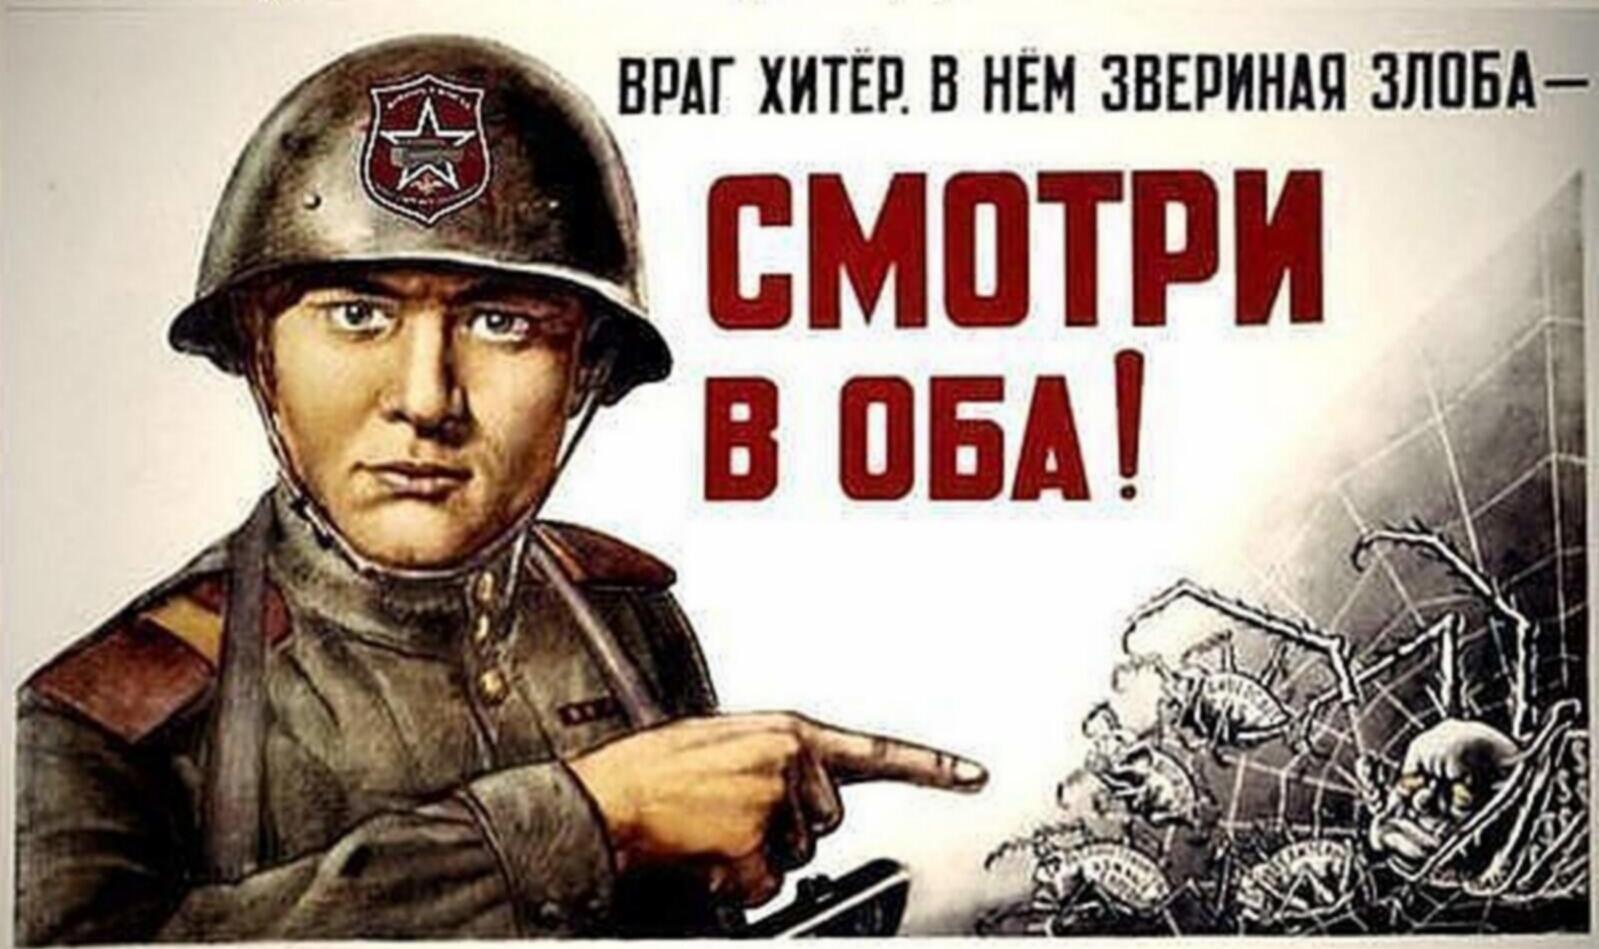 Проявить бдительность. Советские плакаты. Советские плакаты про бдительность. Товарищ будь бдителен плакат. Будьте бдительны плакат.